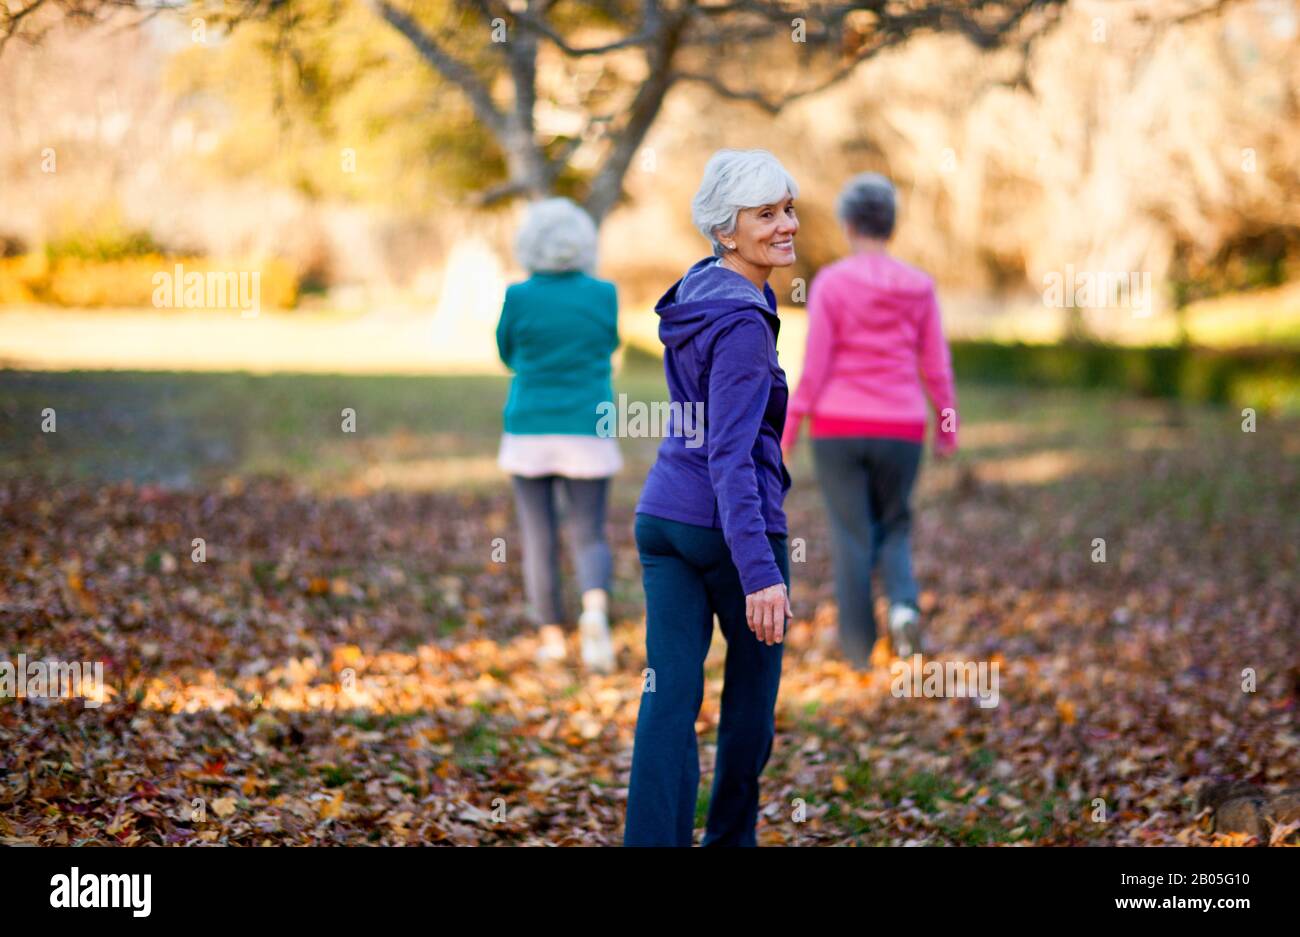 Retrato de una mujer mayor sonriente caminando con sus dos amigos en un parque. Foto de stock